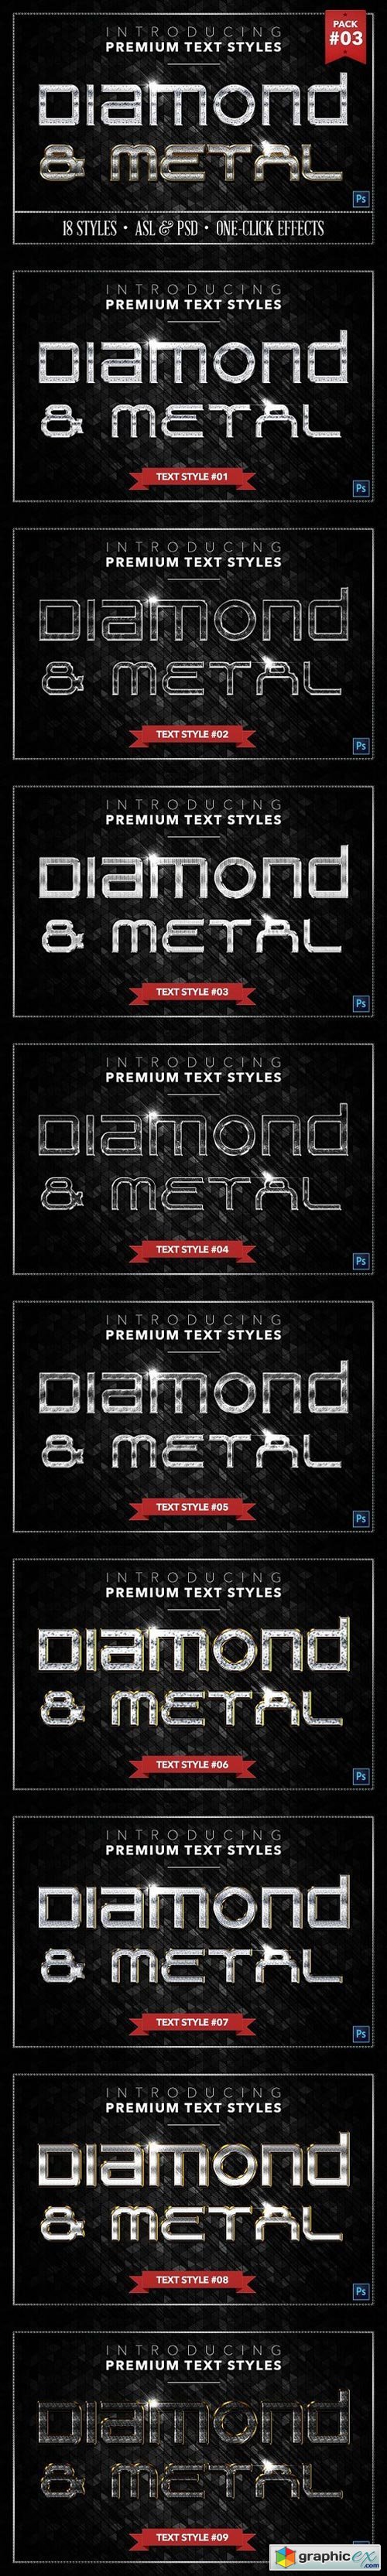 Diamond & Metal #3 - 18 Styles